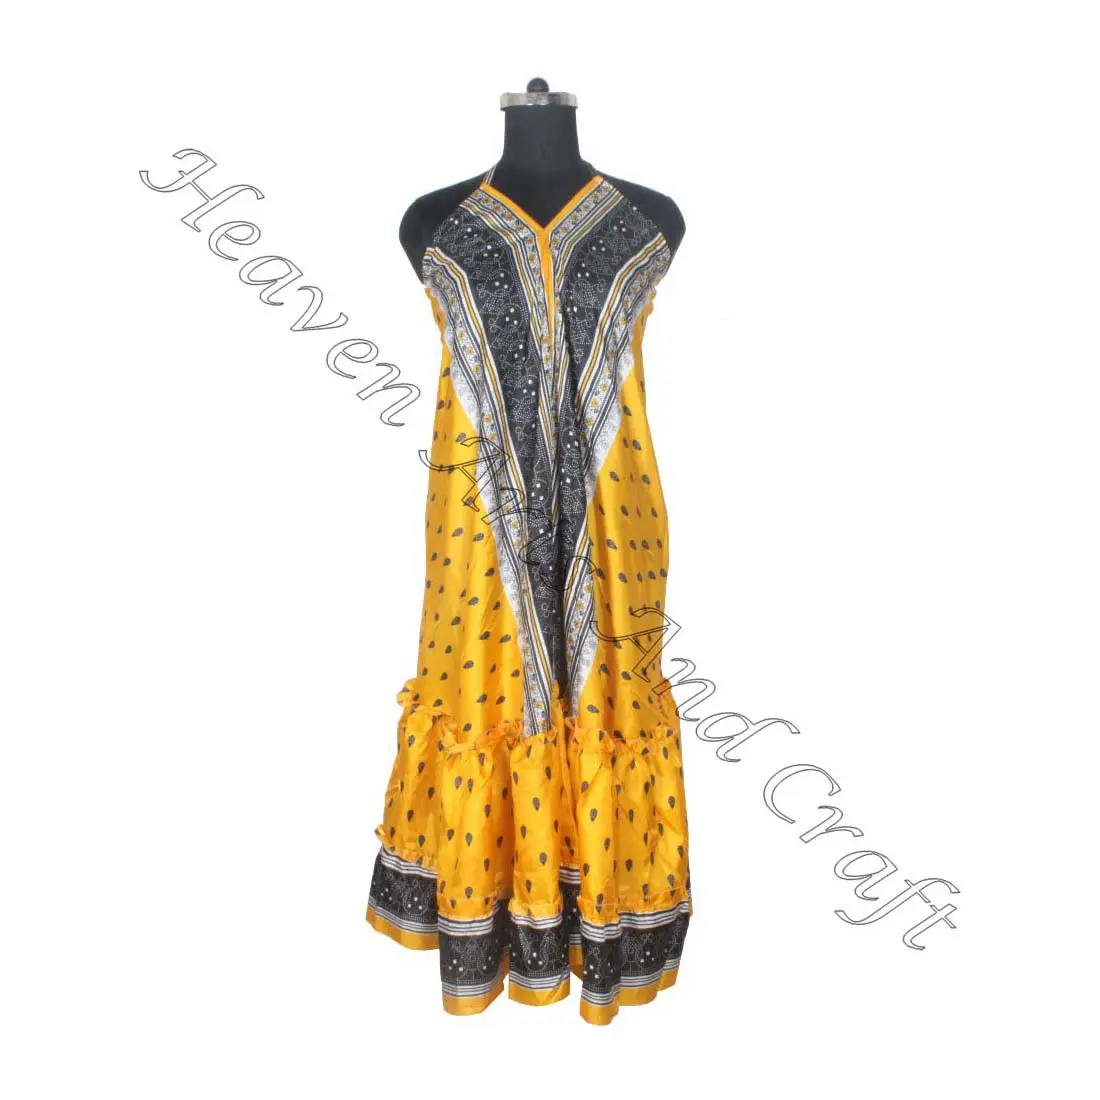 SD015 الساري / الساري / شري ملابس هندية وباكستانية من الهند هيبي بوهو مصنع وصانع ملابس النساء الساري الكلاسيكي